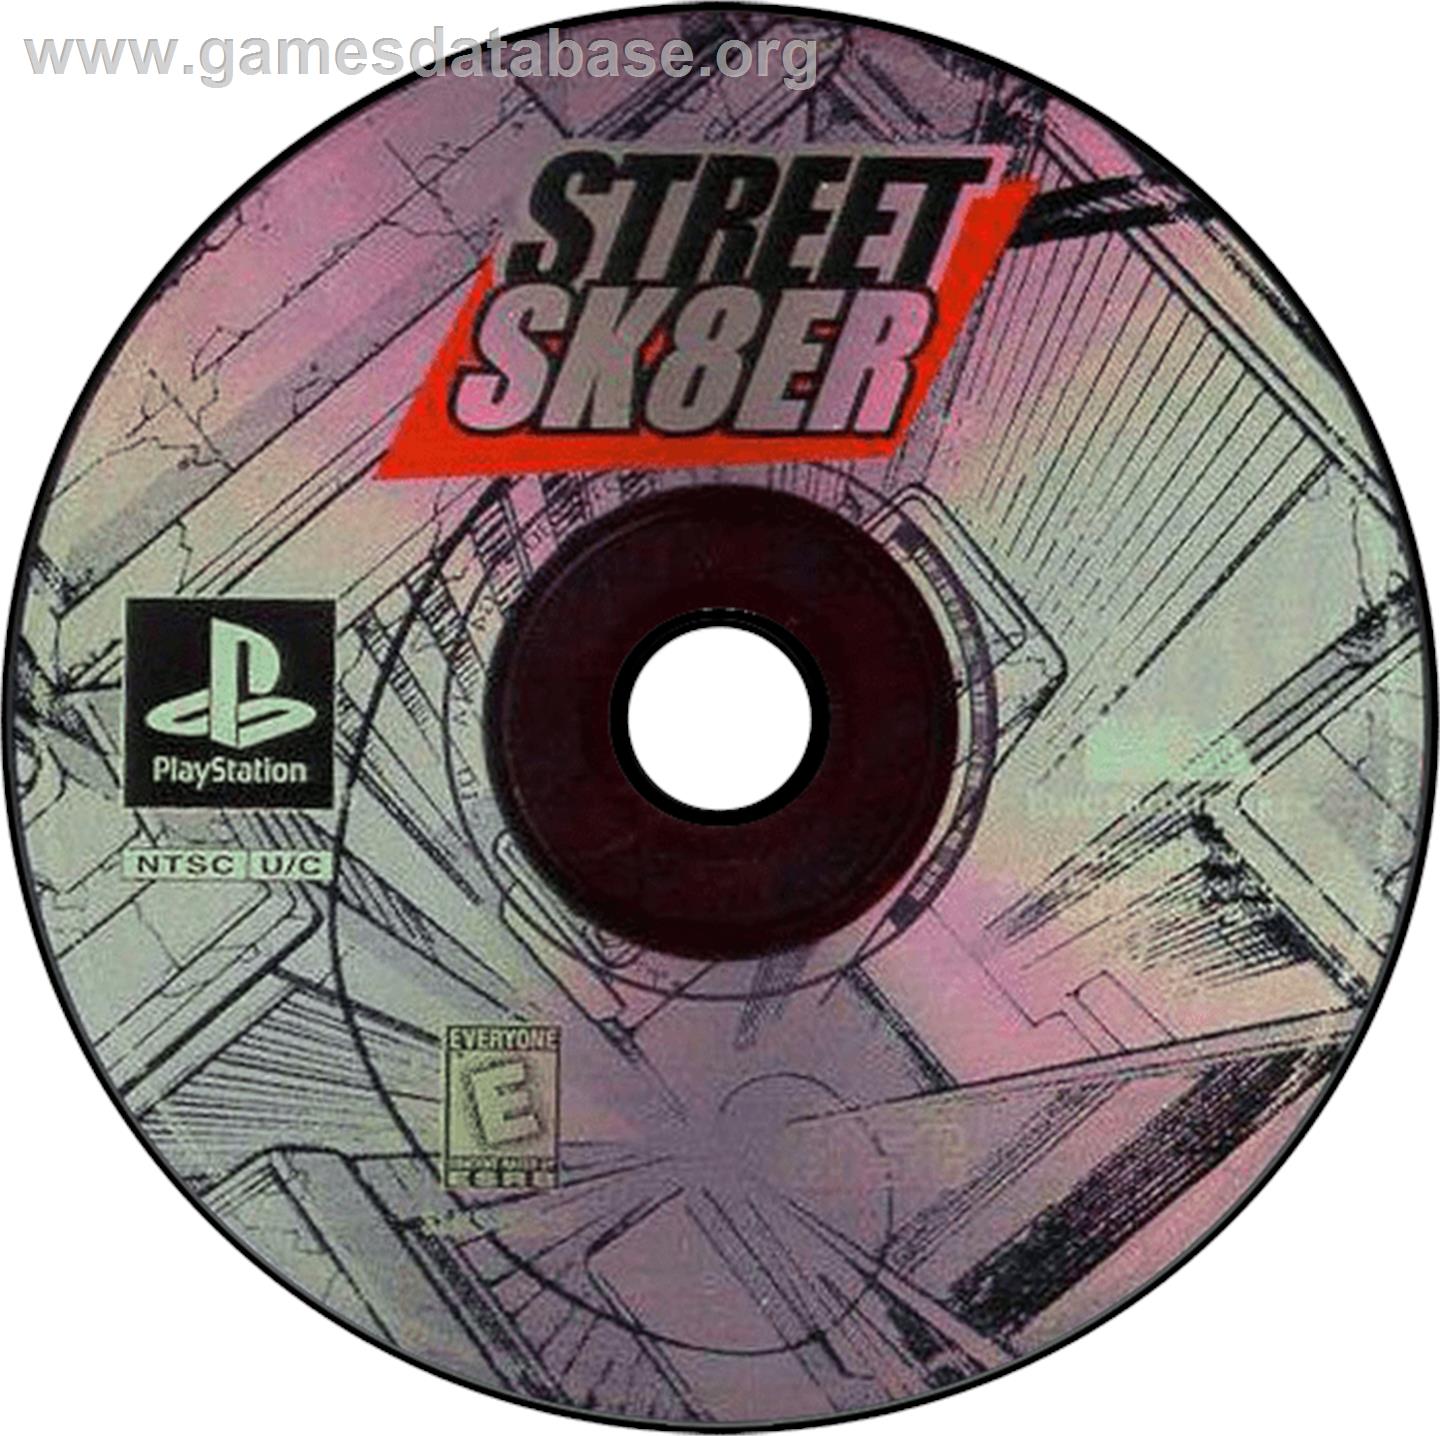 Street Sk8er - Sony Playstation - Artwork - Disc